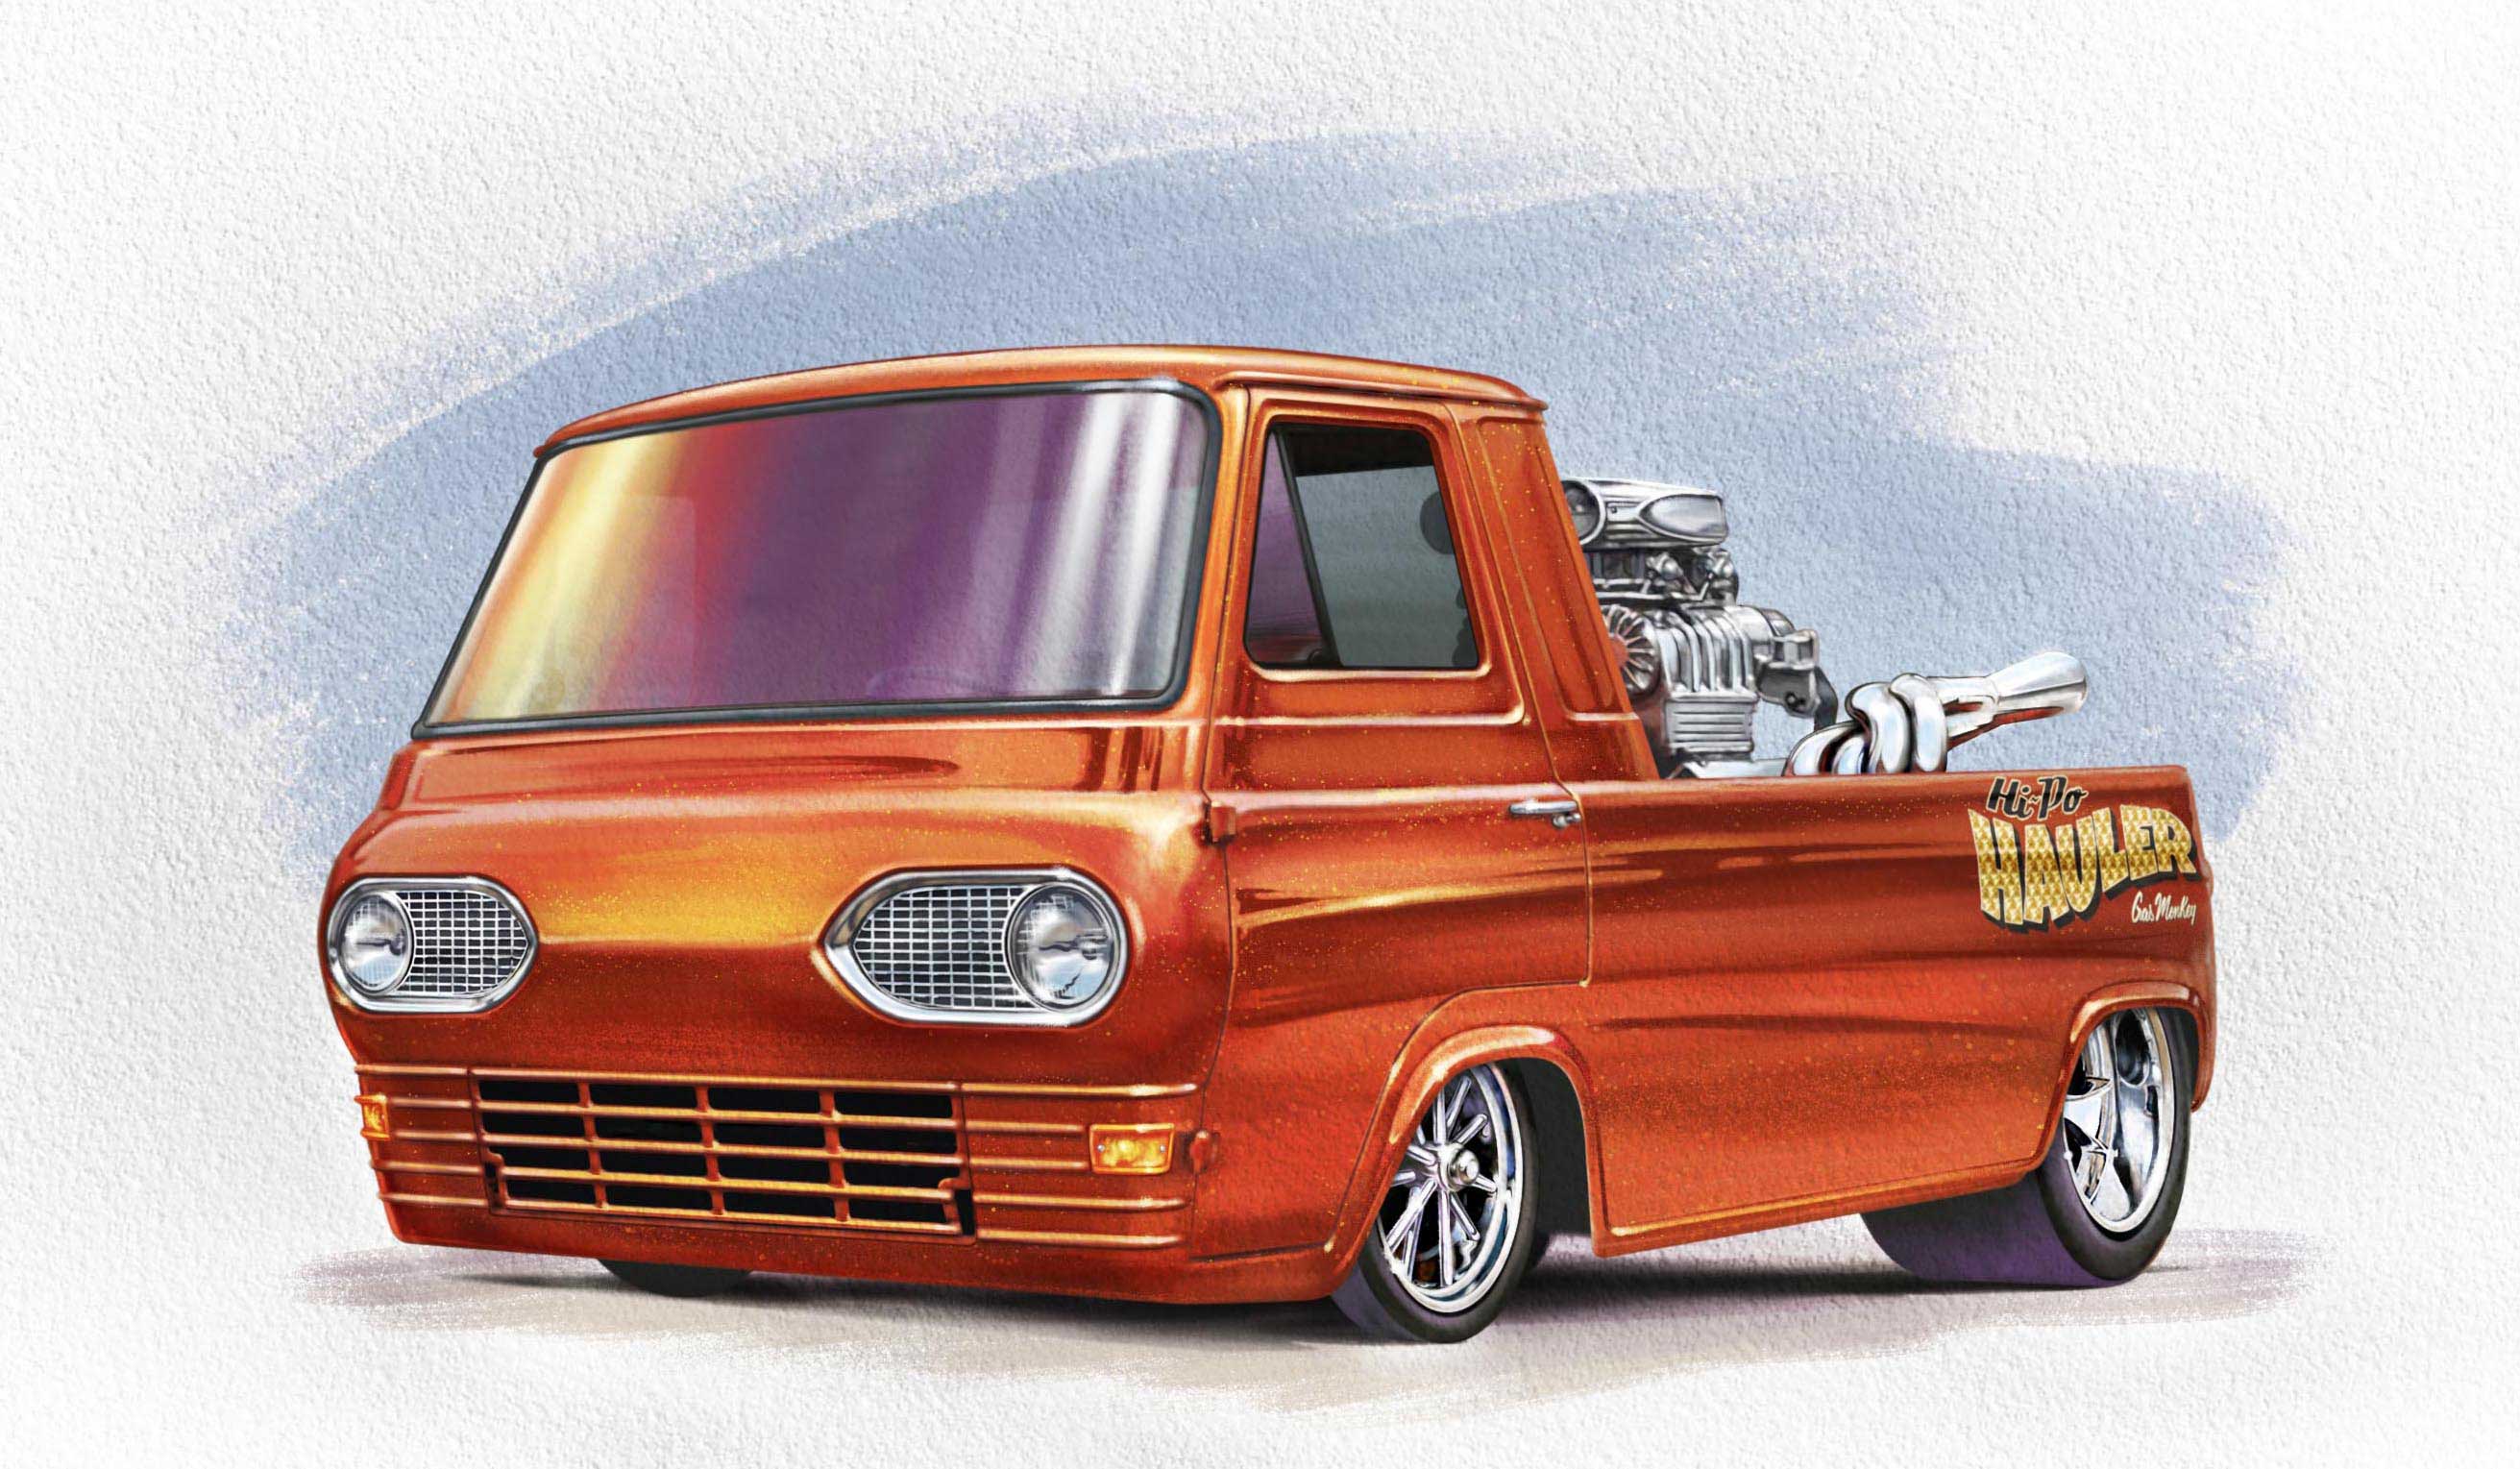 Ray Goudey Illustration Hot Wheels hauler toy car